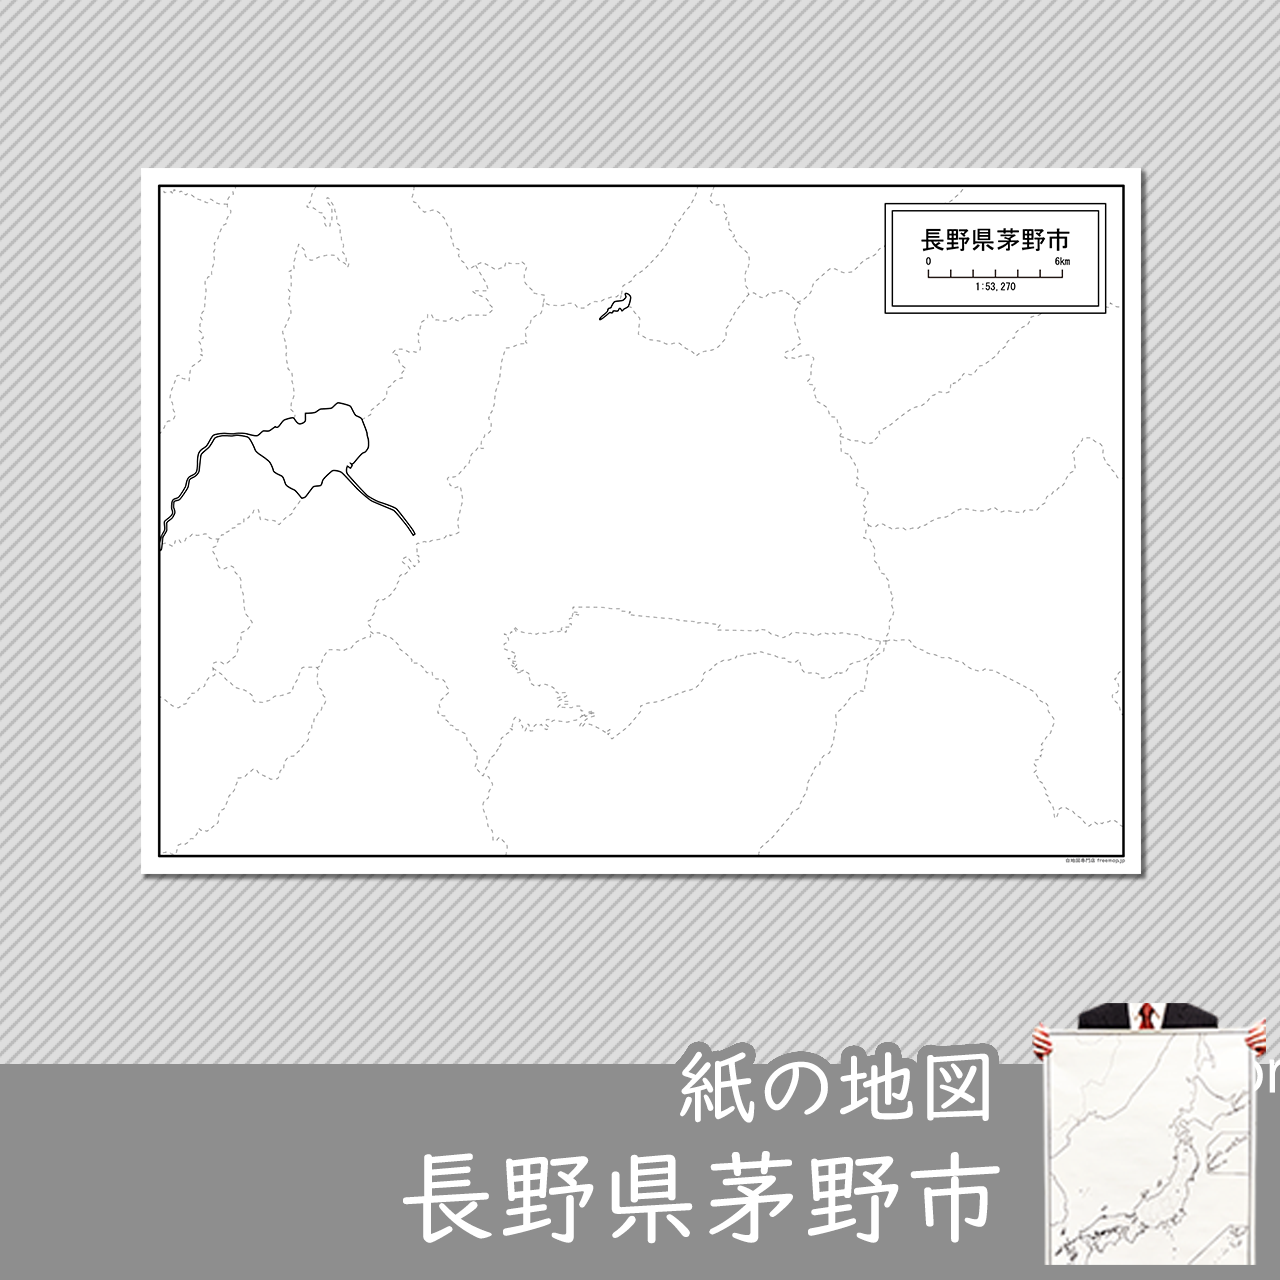 茅野市の紙の白地図のサムネイル